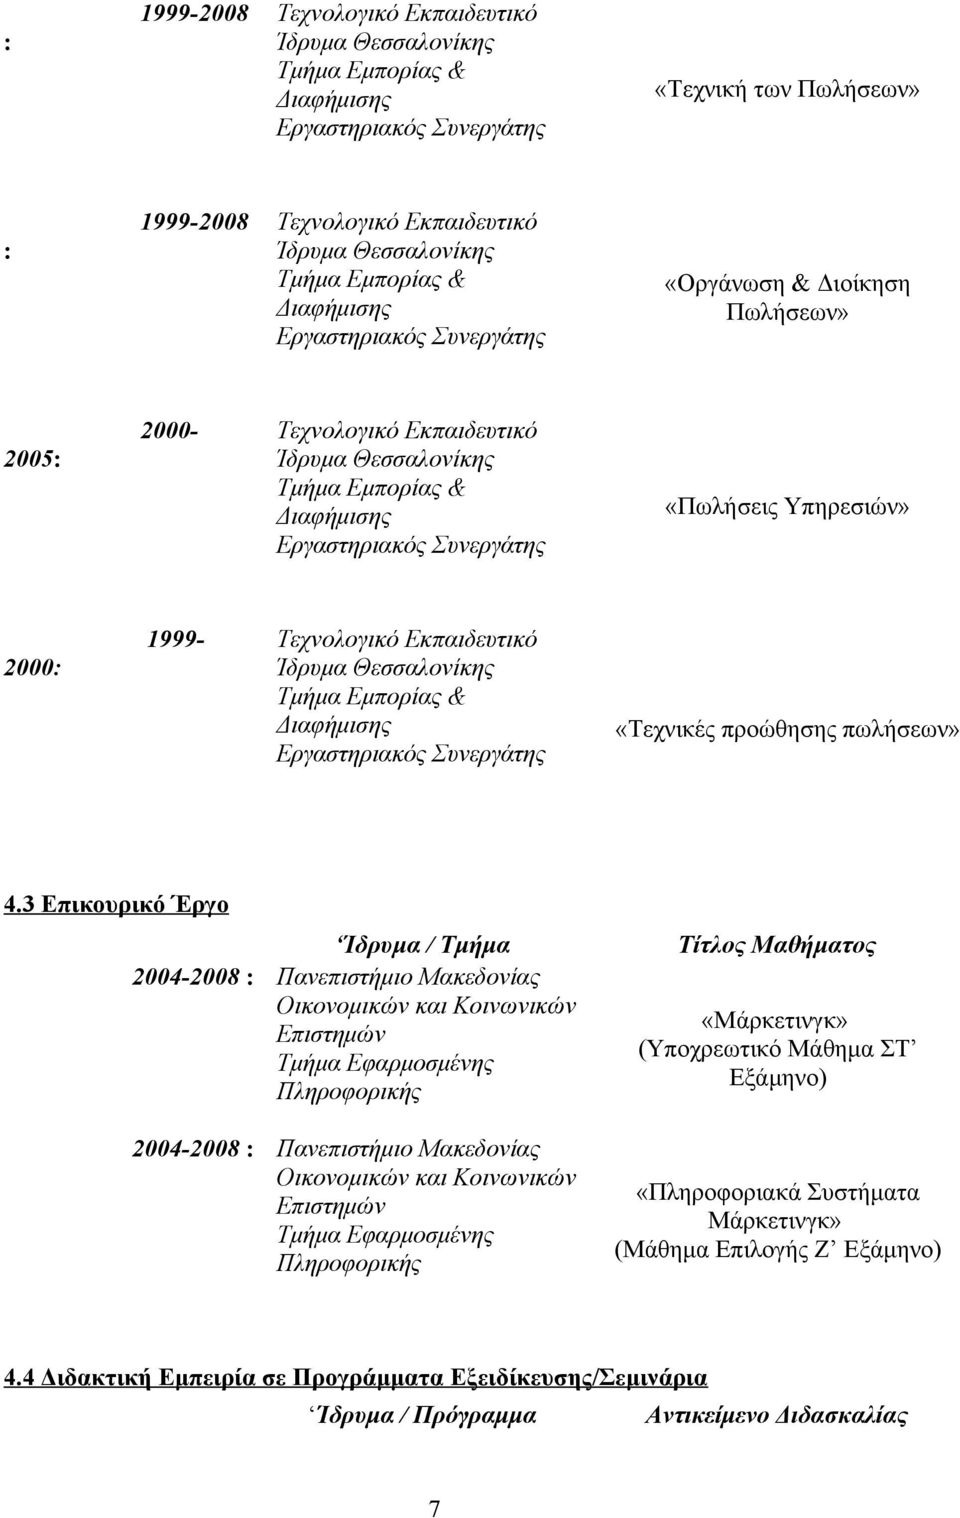 Υπηρεσιών» 2000: 1999- Τεχνολογικό Εκπαιδευτικό Ίδρυμα Θεσσαλονίκης Τμήμα Εμπορίας & Διαφήμισης Εργαστηριακός Συνεργάτης «Τεχνικές προώθησης πωλήσεων» 4.